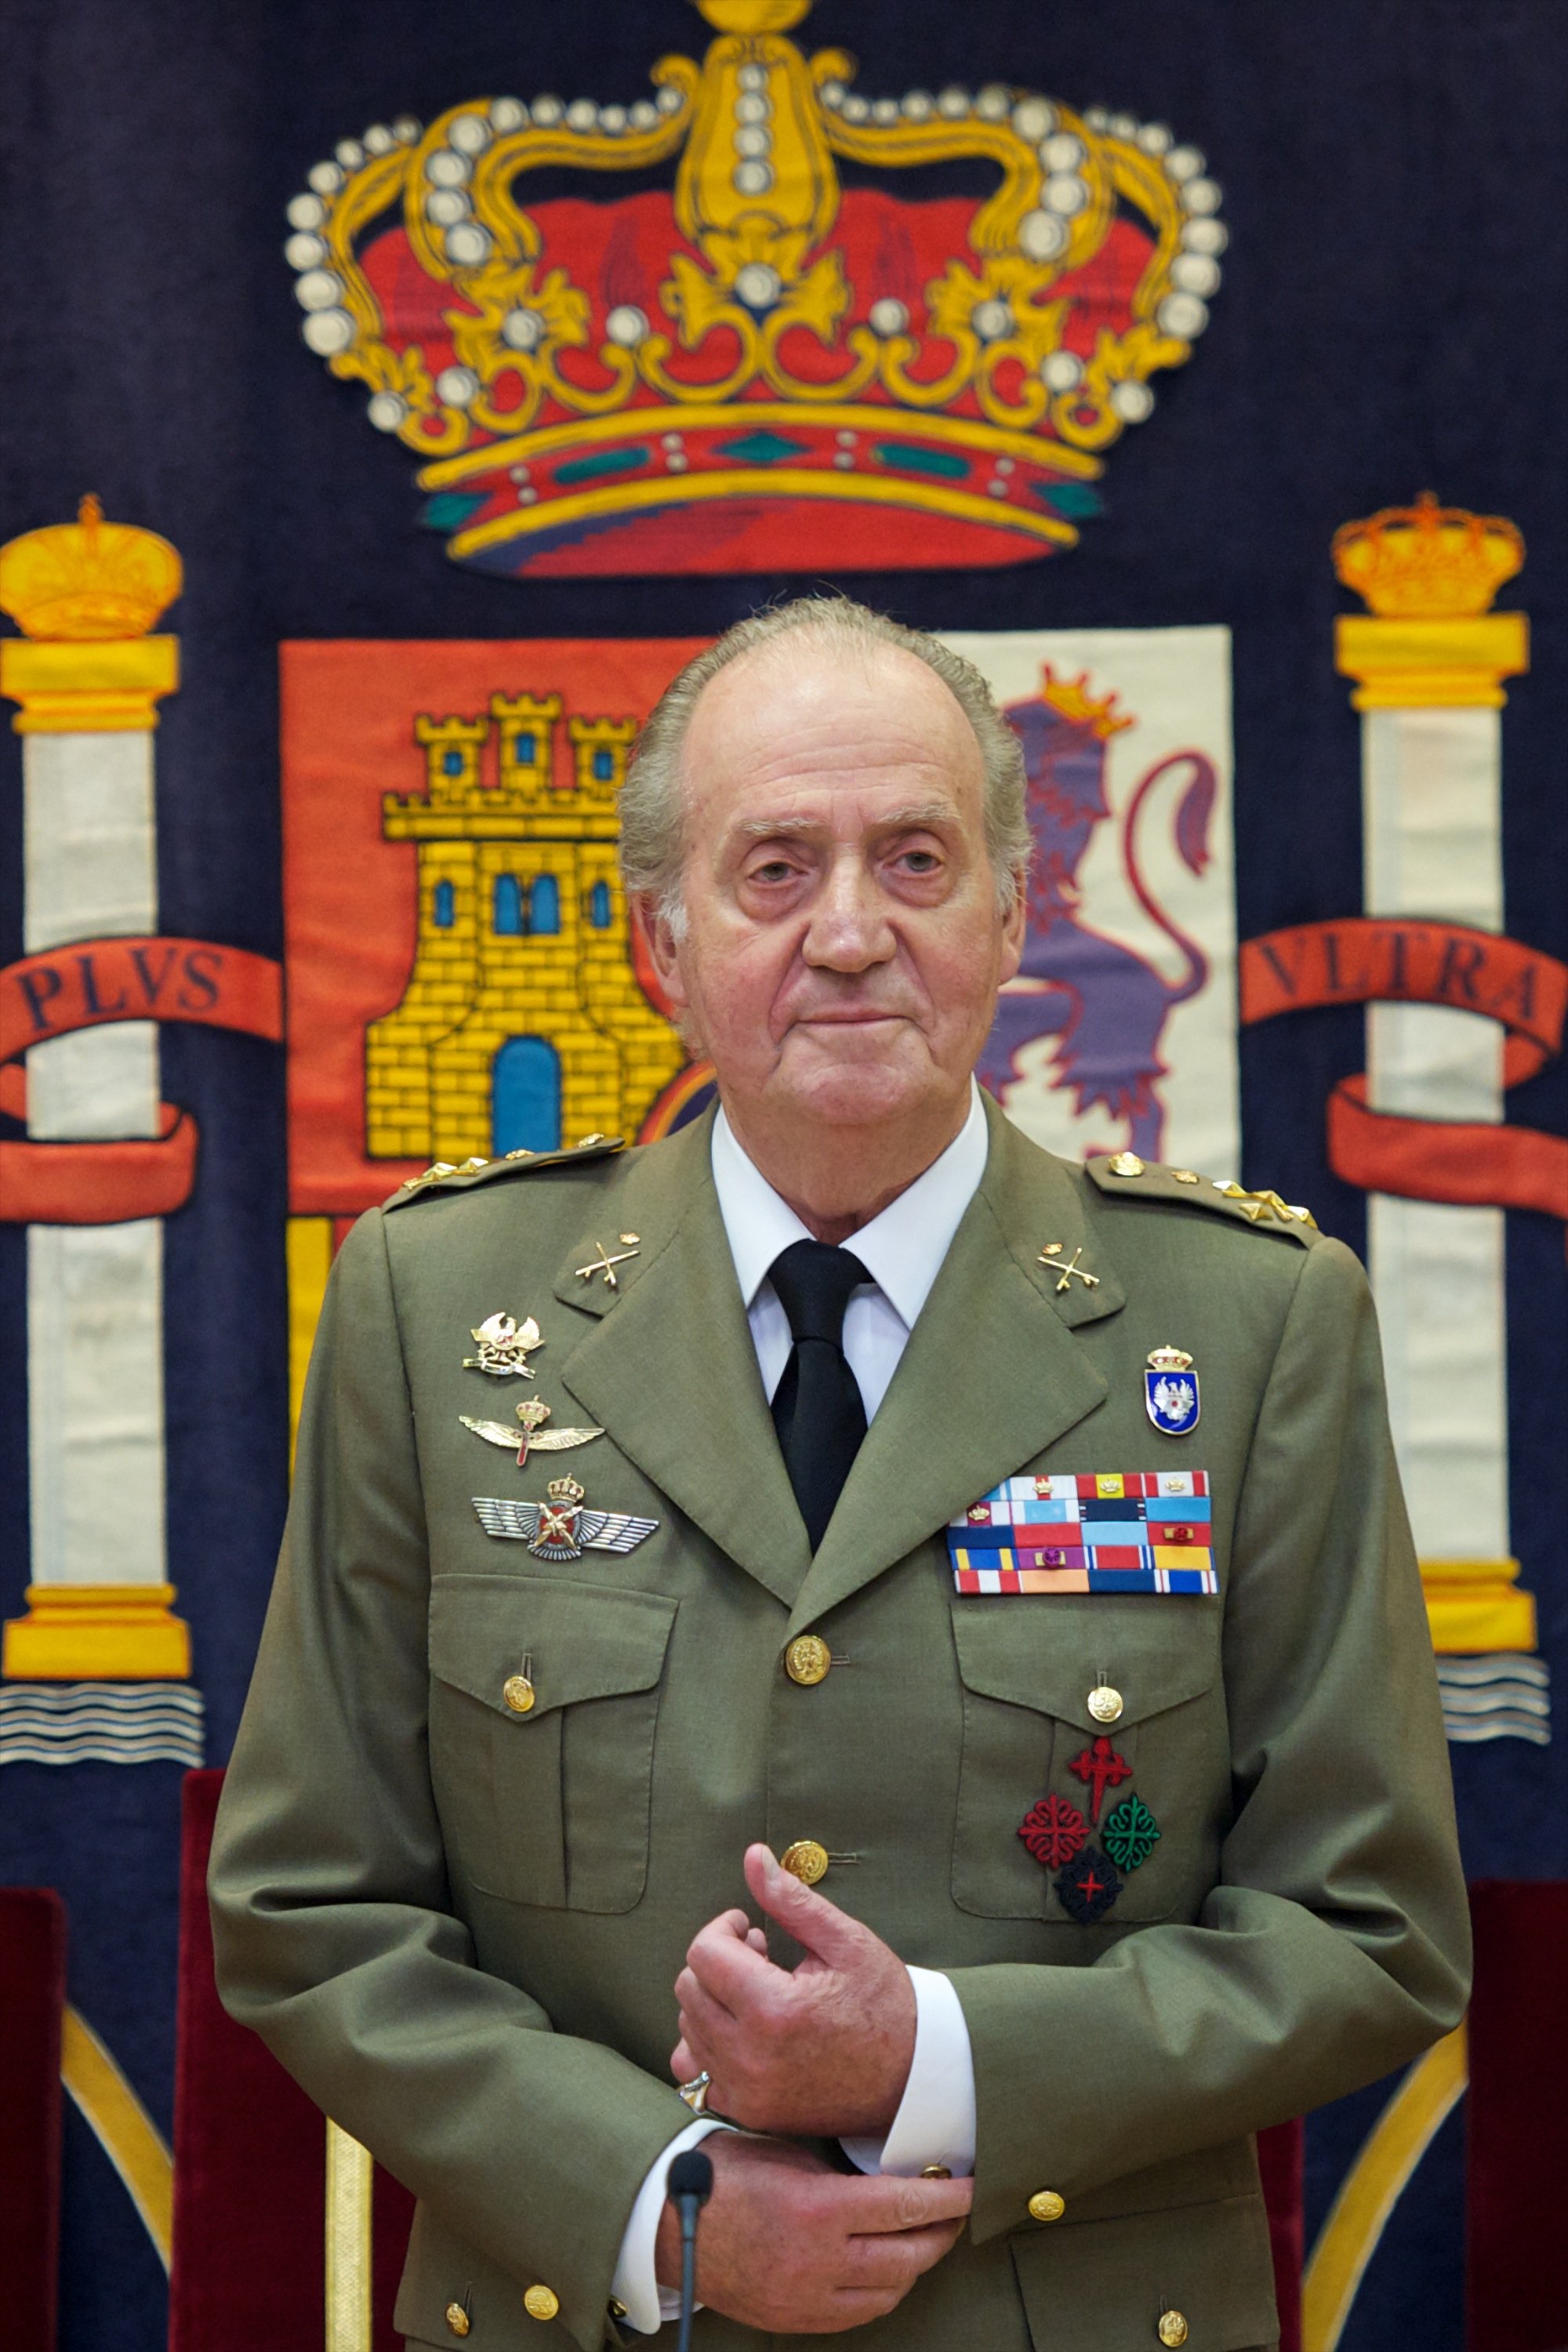 El rey Juan Carlos de España asistiendo a la clausura del Curso Académico de "Estado Mayor del Ejército de Tierra" el 29 de junio de 2012 en Madrid, España. | Foto: Getty Images